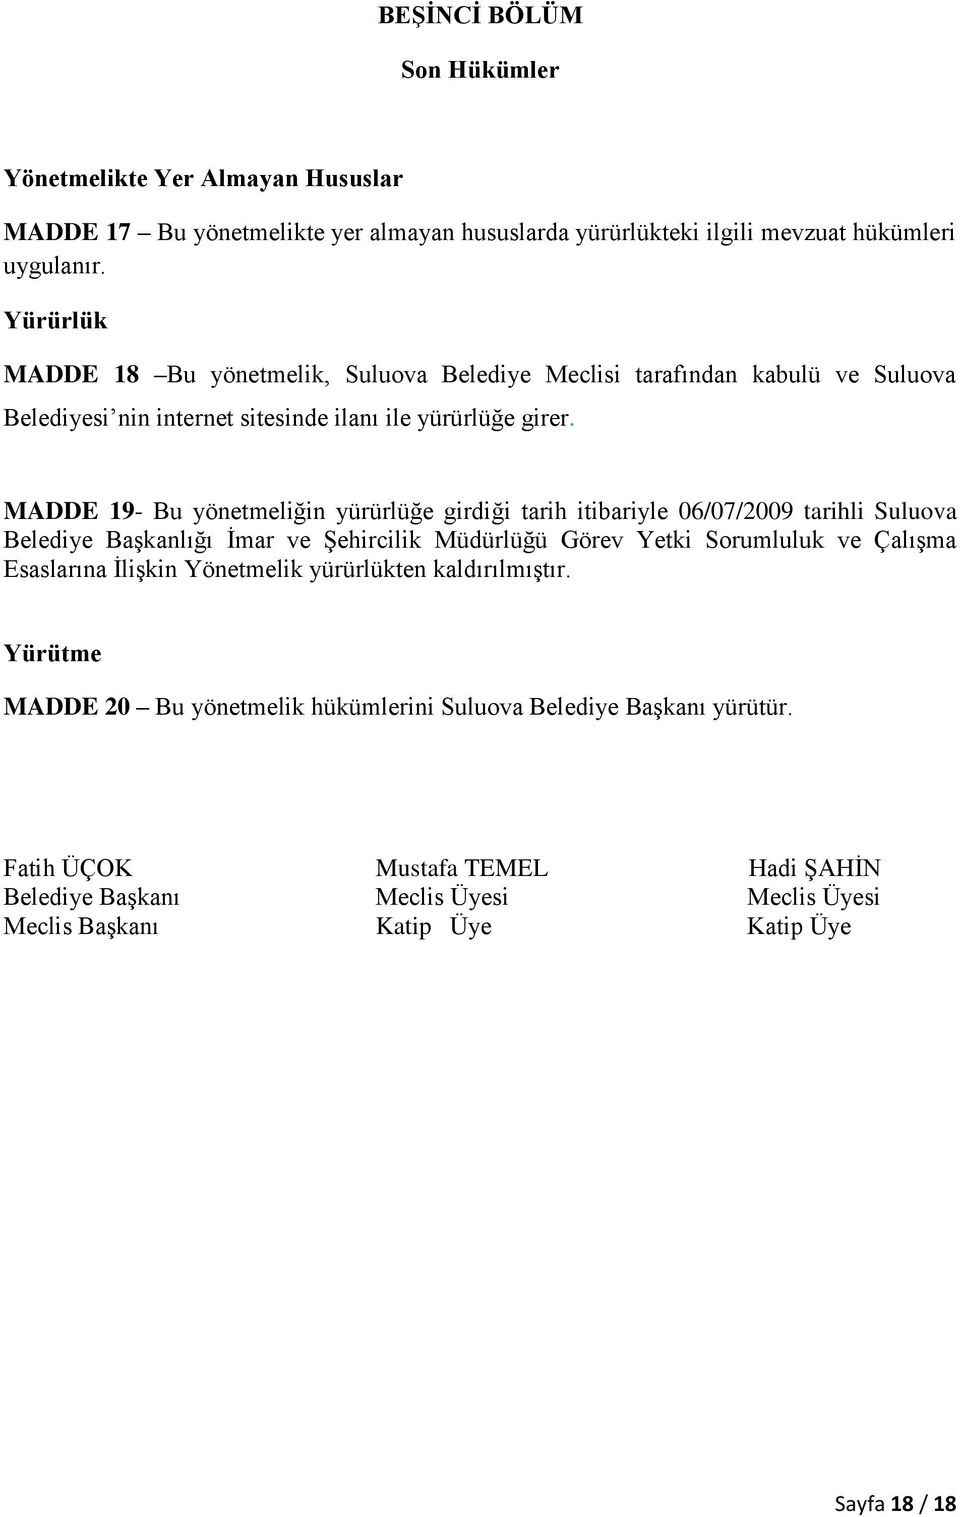 MADDE 19- Bu yönetmeliğin yürürlüğe girdiği tarih itibariyle 06/07/2009 tarihli Suluova Belediye Başkanlığı İmar ve Şehircilik Müdürlüğü Görev Yetki Sorumluluk ve Çalışma Esaslarına